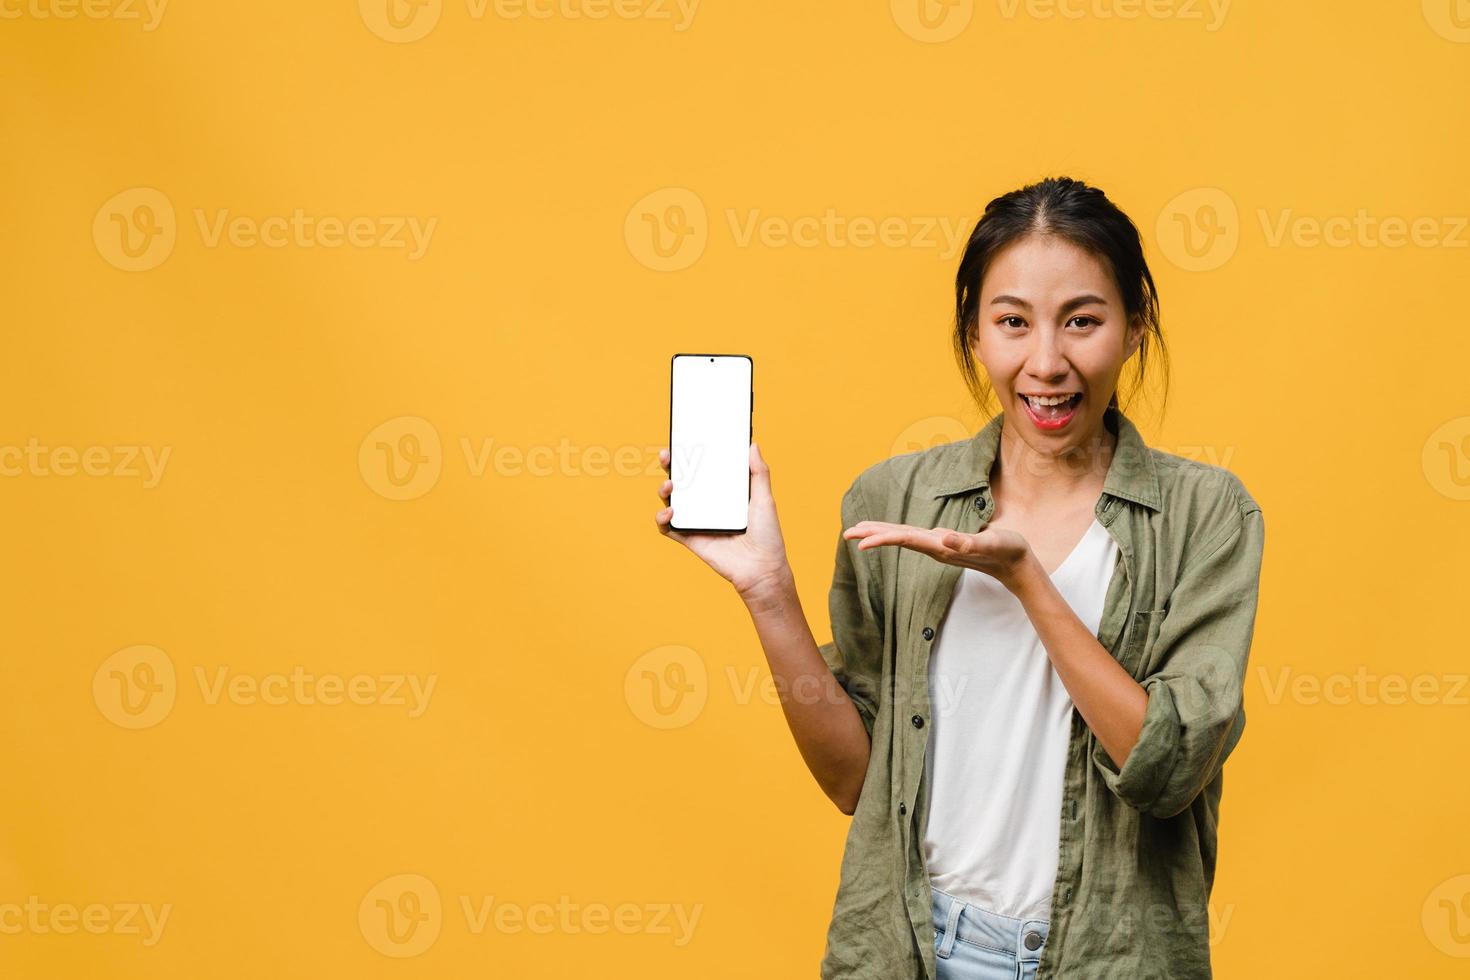 jonge aziatische dame toont een leeg smartphonescherm met positieve uitdrukking, glimlacht breed, gekleed in casual kleding en voelt zich gelukkig op gele achtergrond. mobiele telefoon met wit scherm in vrouwelijke hand. foto